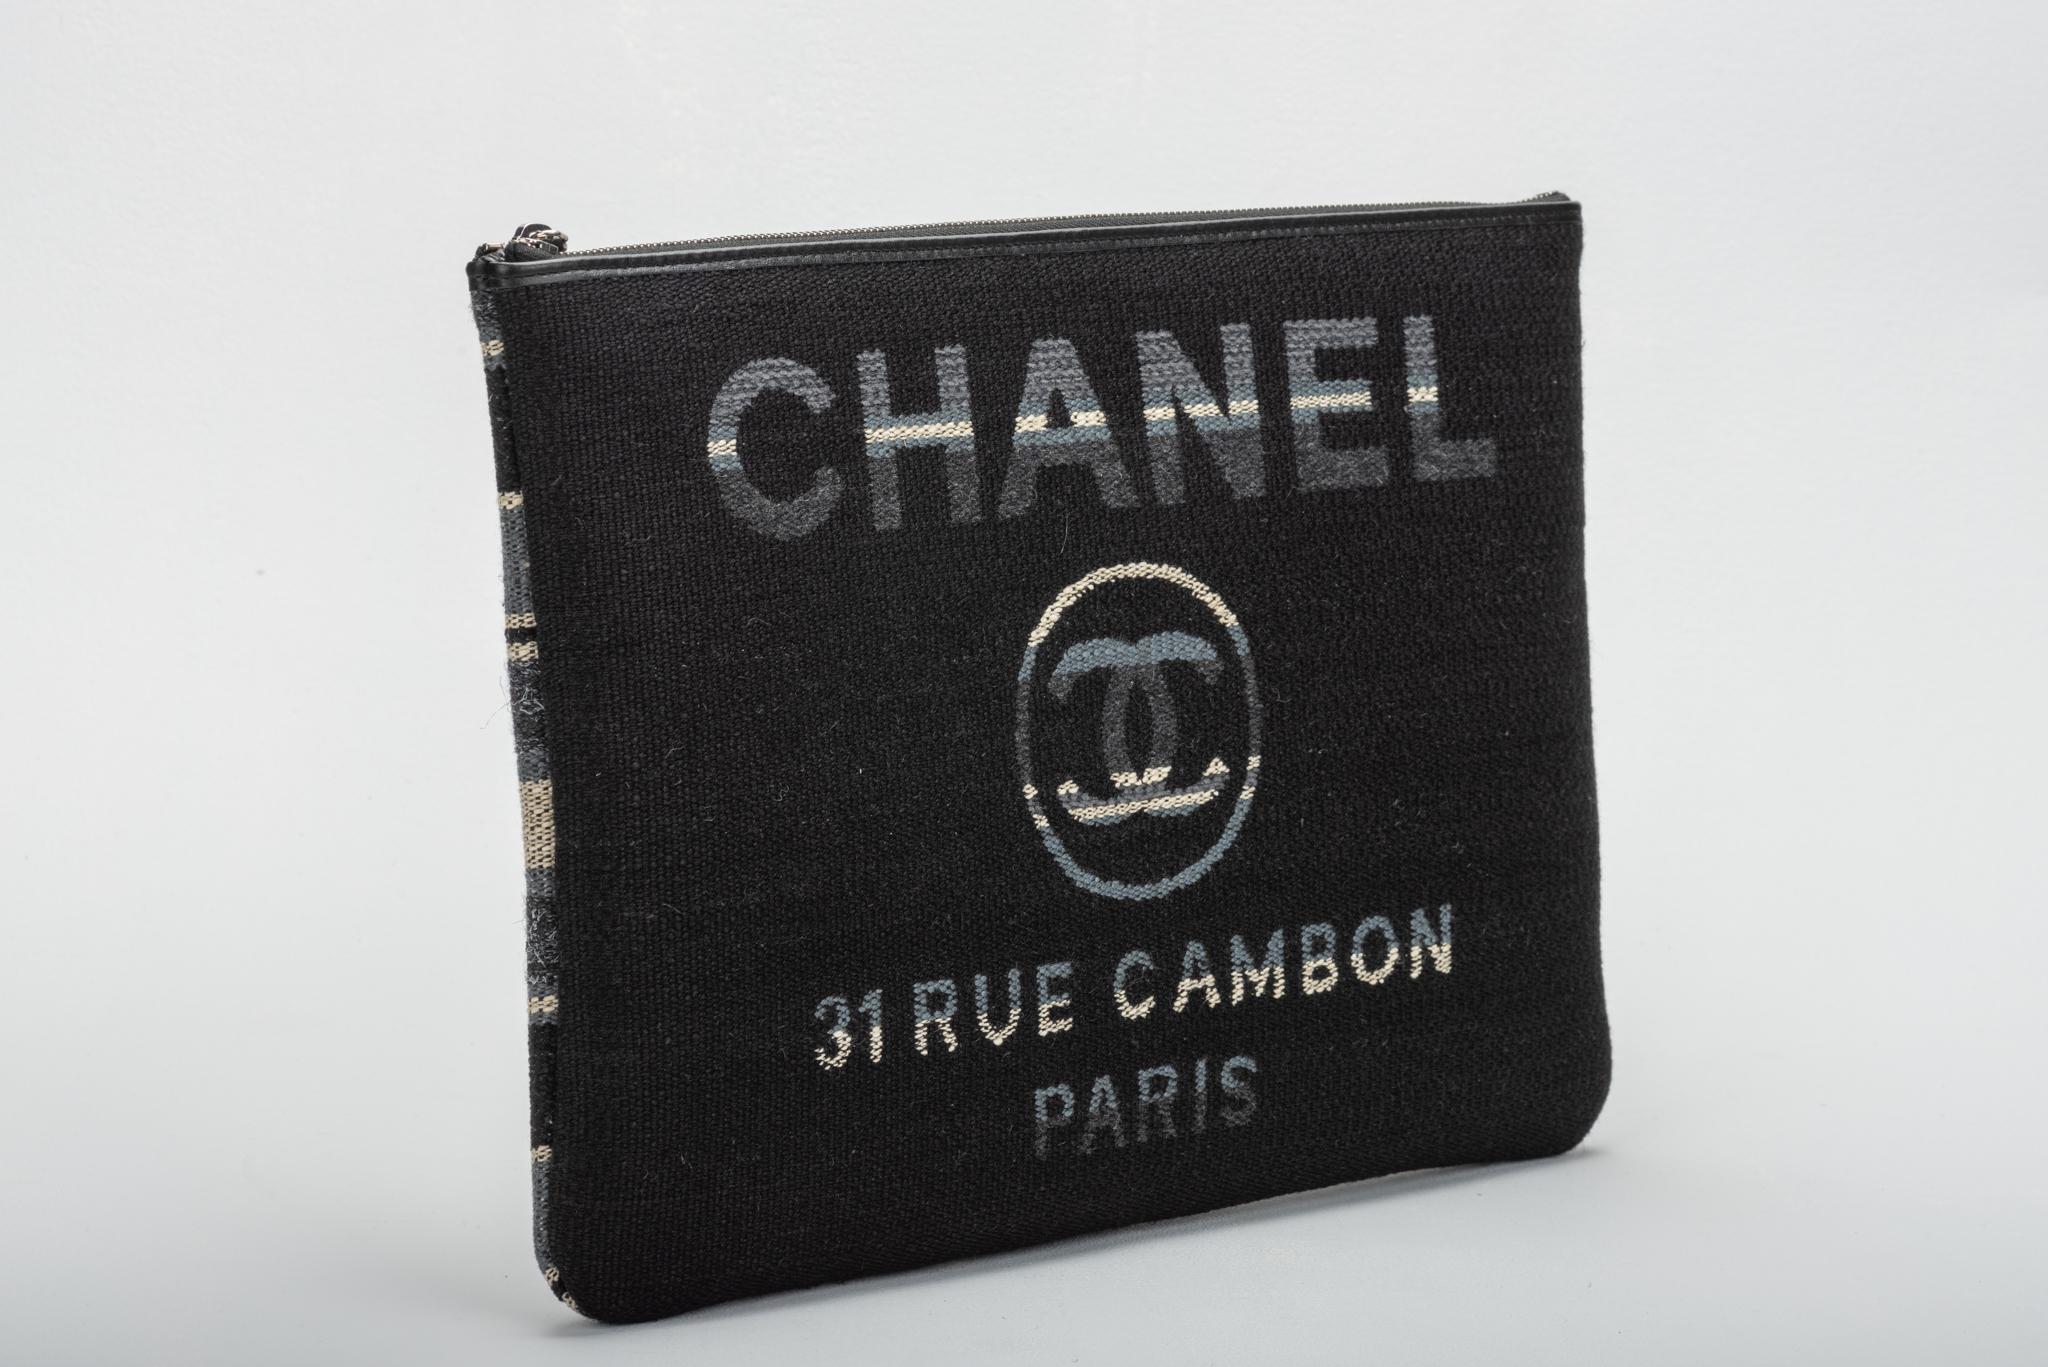 Neu in der Box, Chanel große gestreifte Leinen Clutch. Schwarz, grau und beige. Wird mit Hologramm, Ausweis, Schutzhülle, Schachtel und Band geliefert.